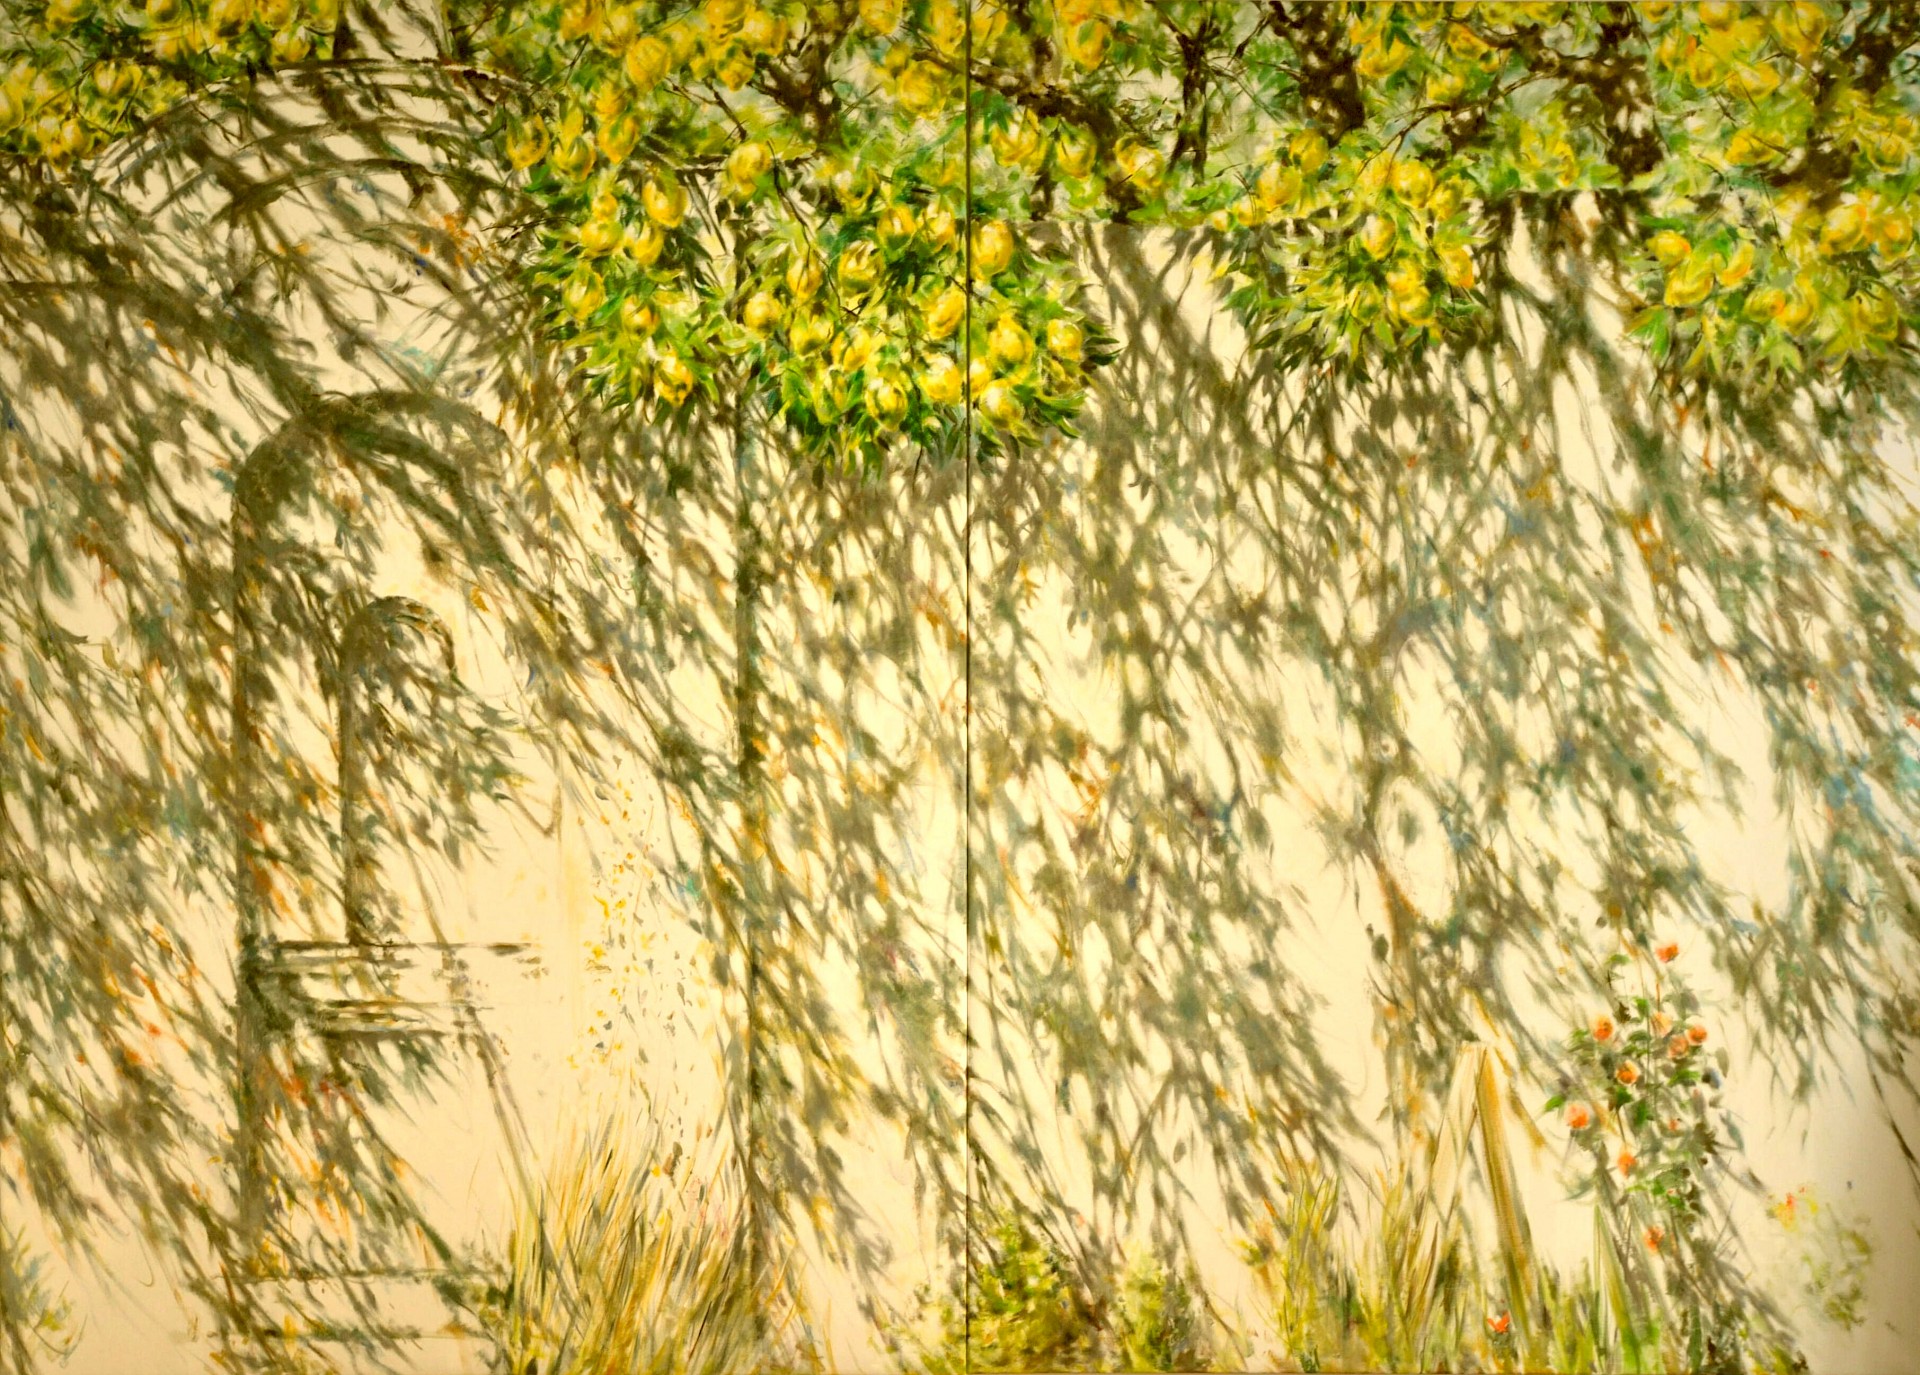 Zitronenmauer, 250 x 350 cm, Öl / Lw., 2010